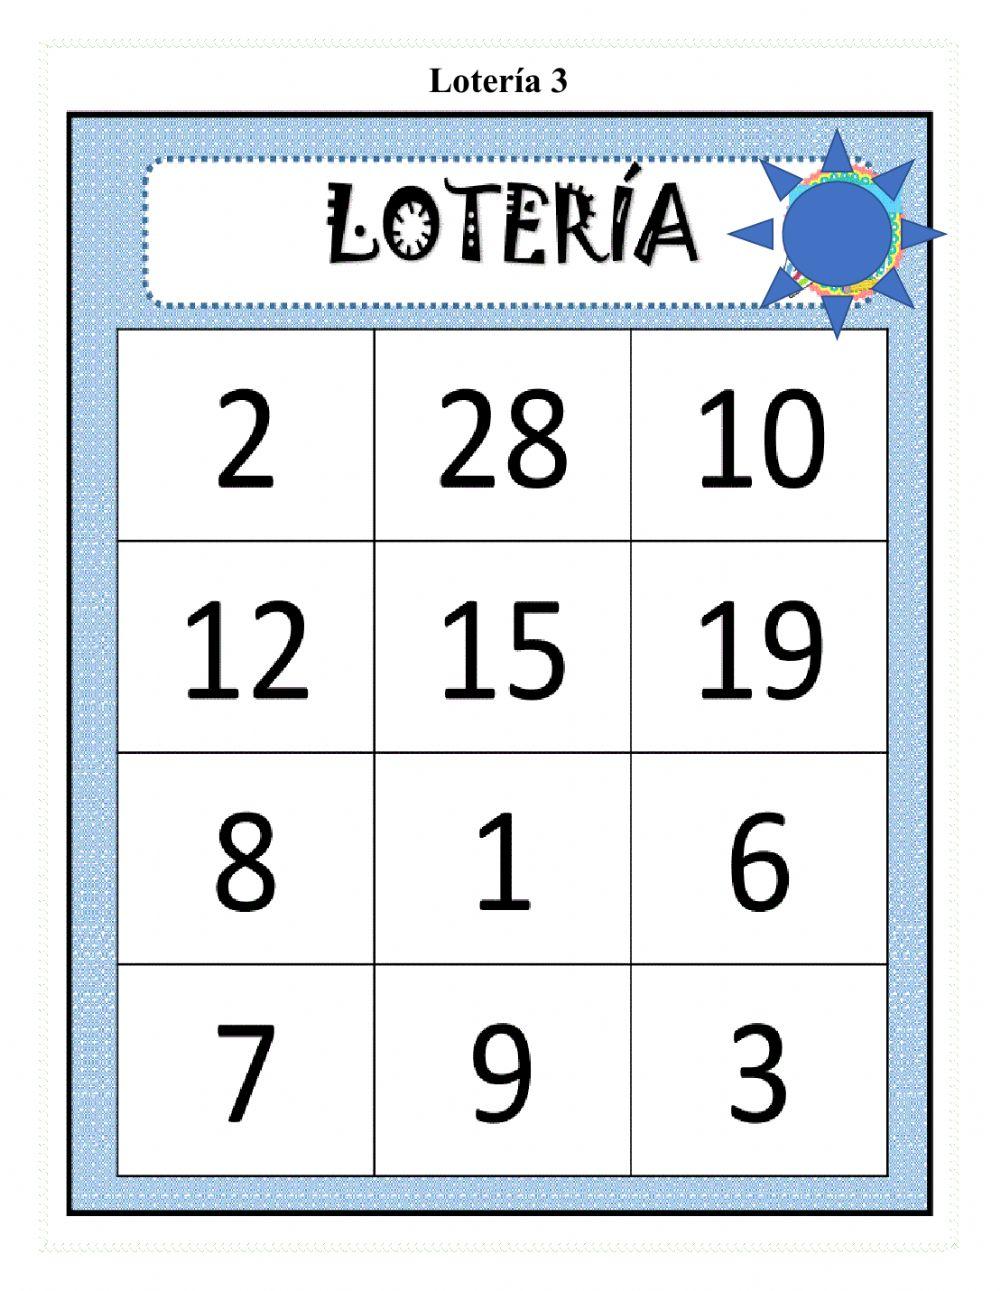 Lotería 3